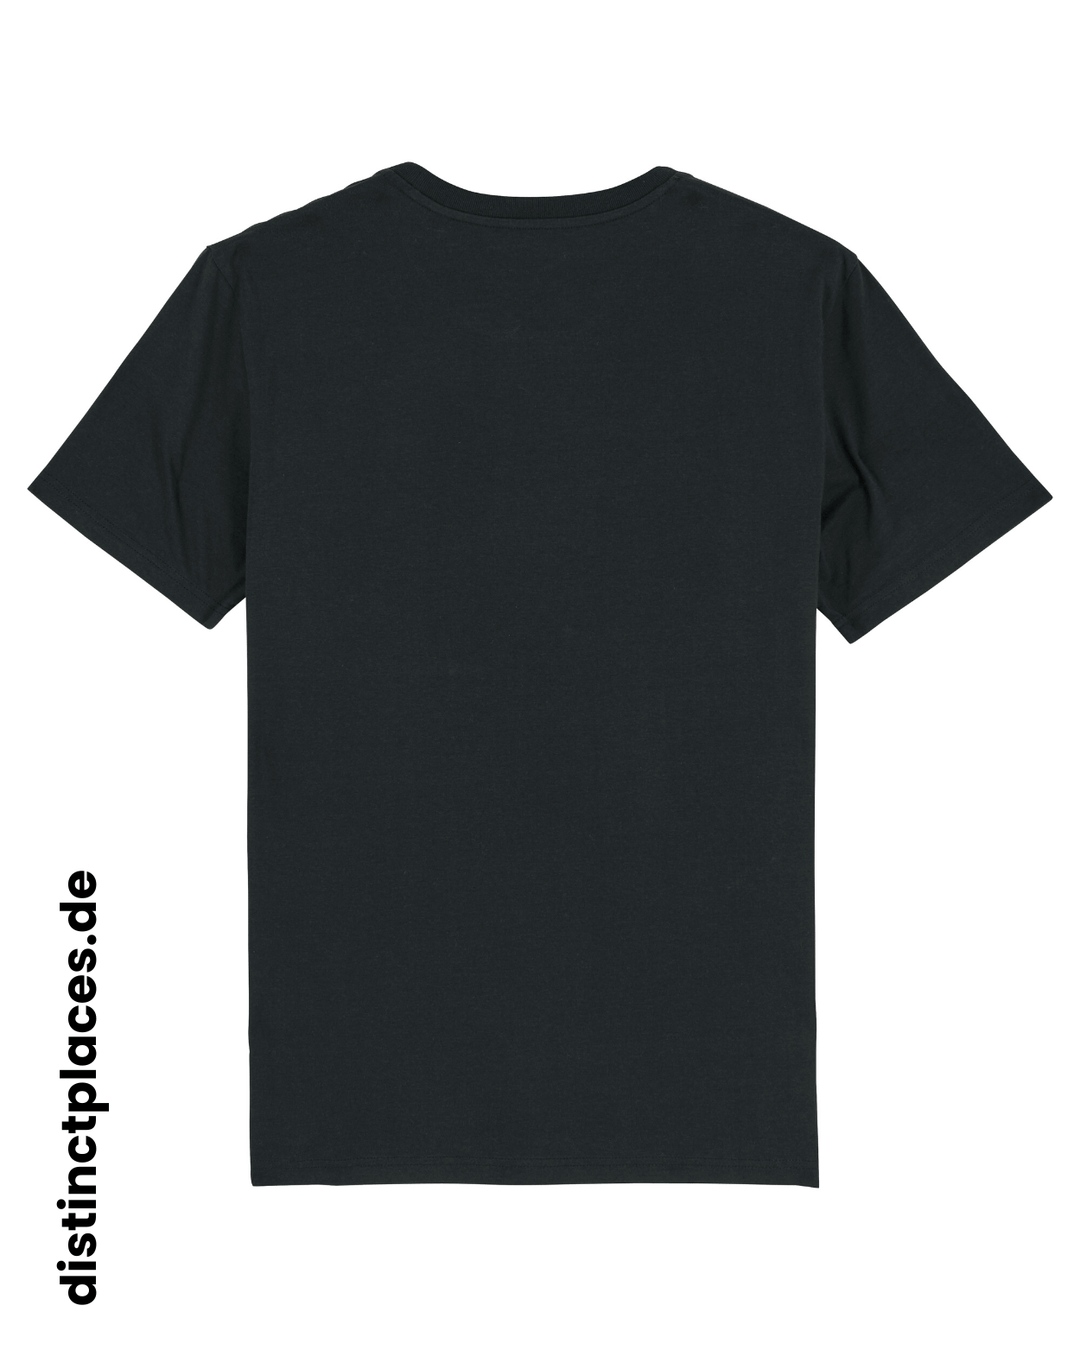 Schwarzes fairtrade, vegan und bio-baumwoll T-Shirt von hinten mit einem minimalistischem weißen Logo, beziehungsweise Schriftzug für Sachsen-Anhalt